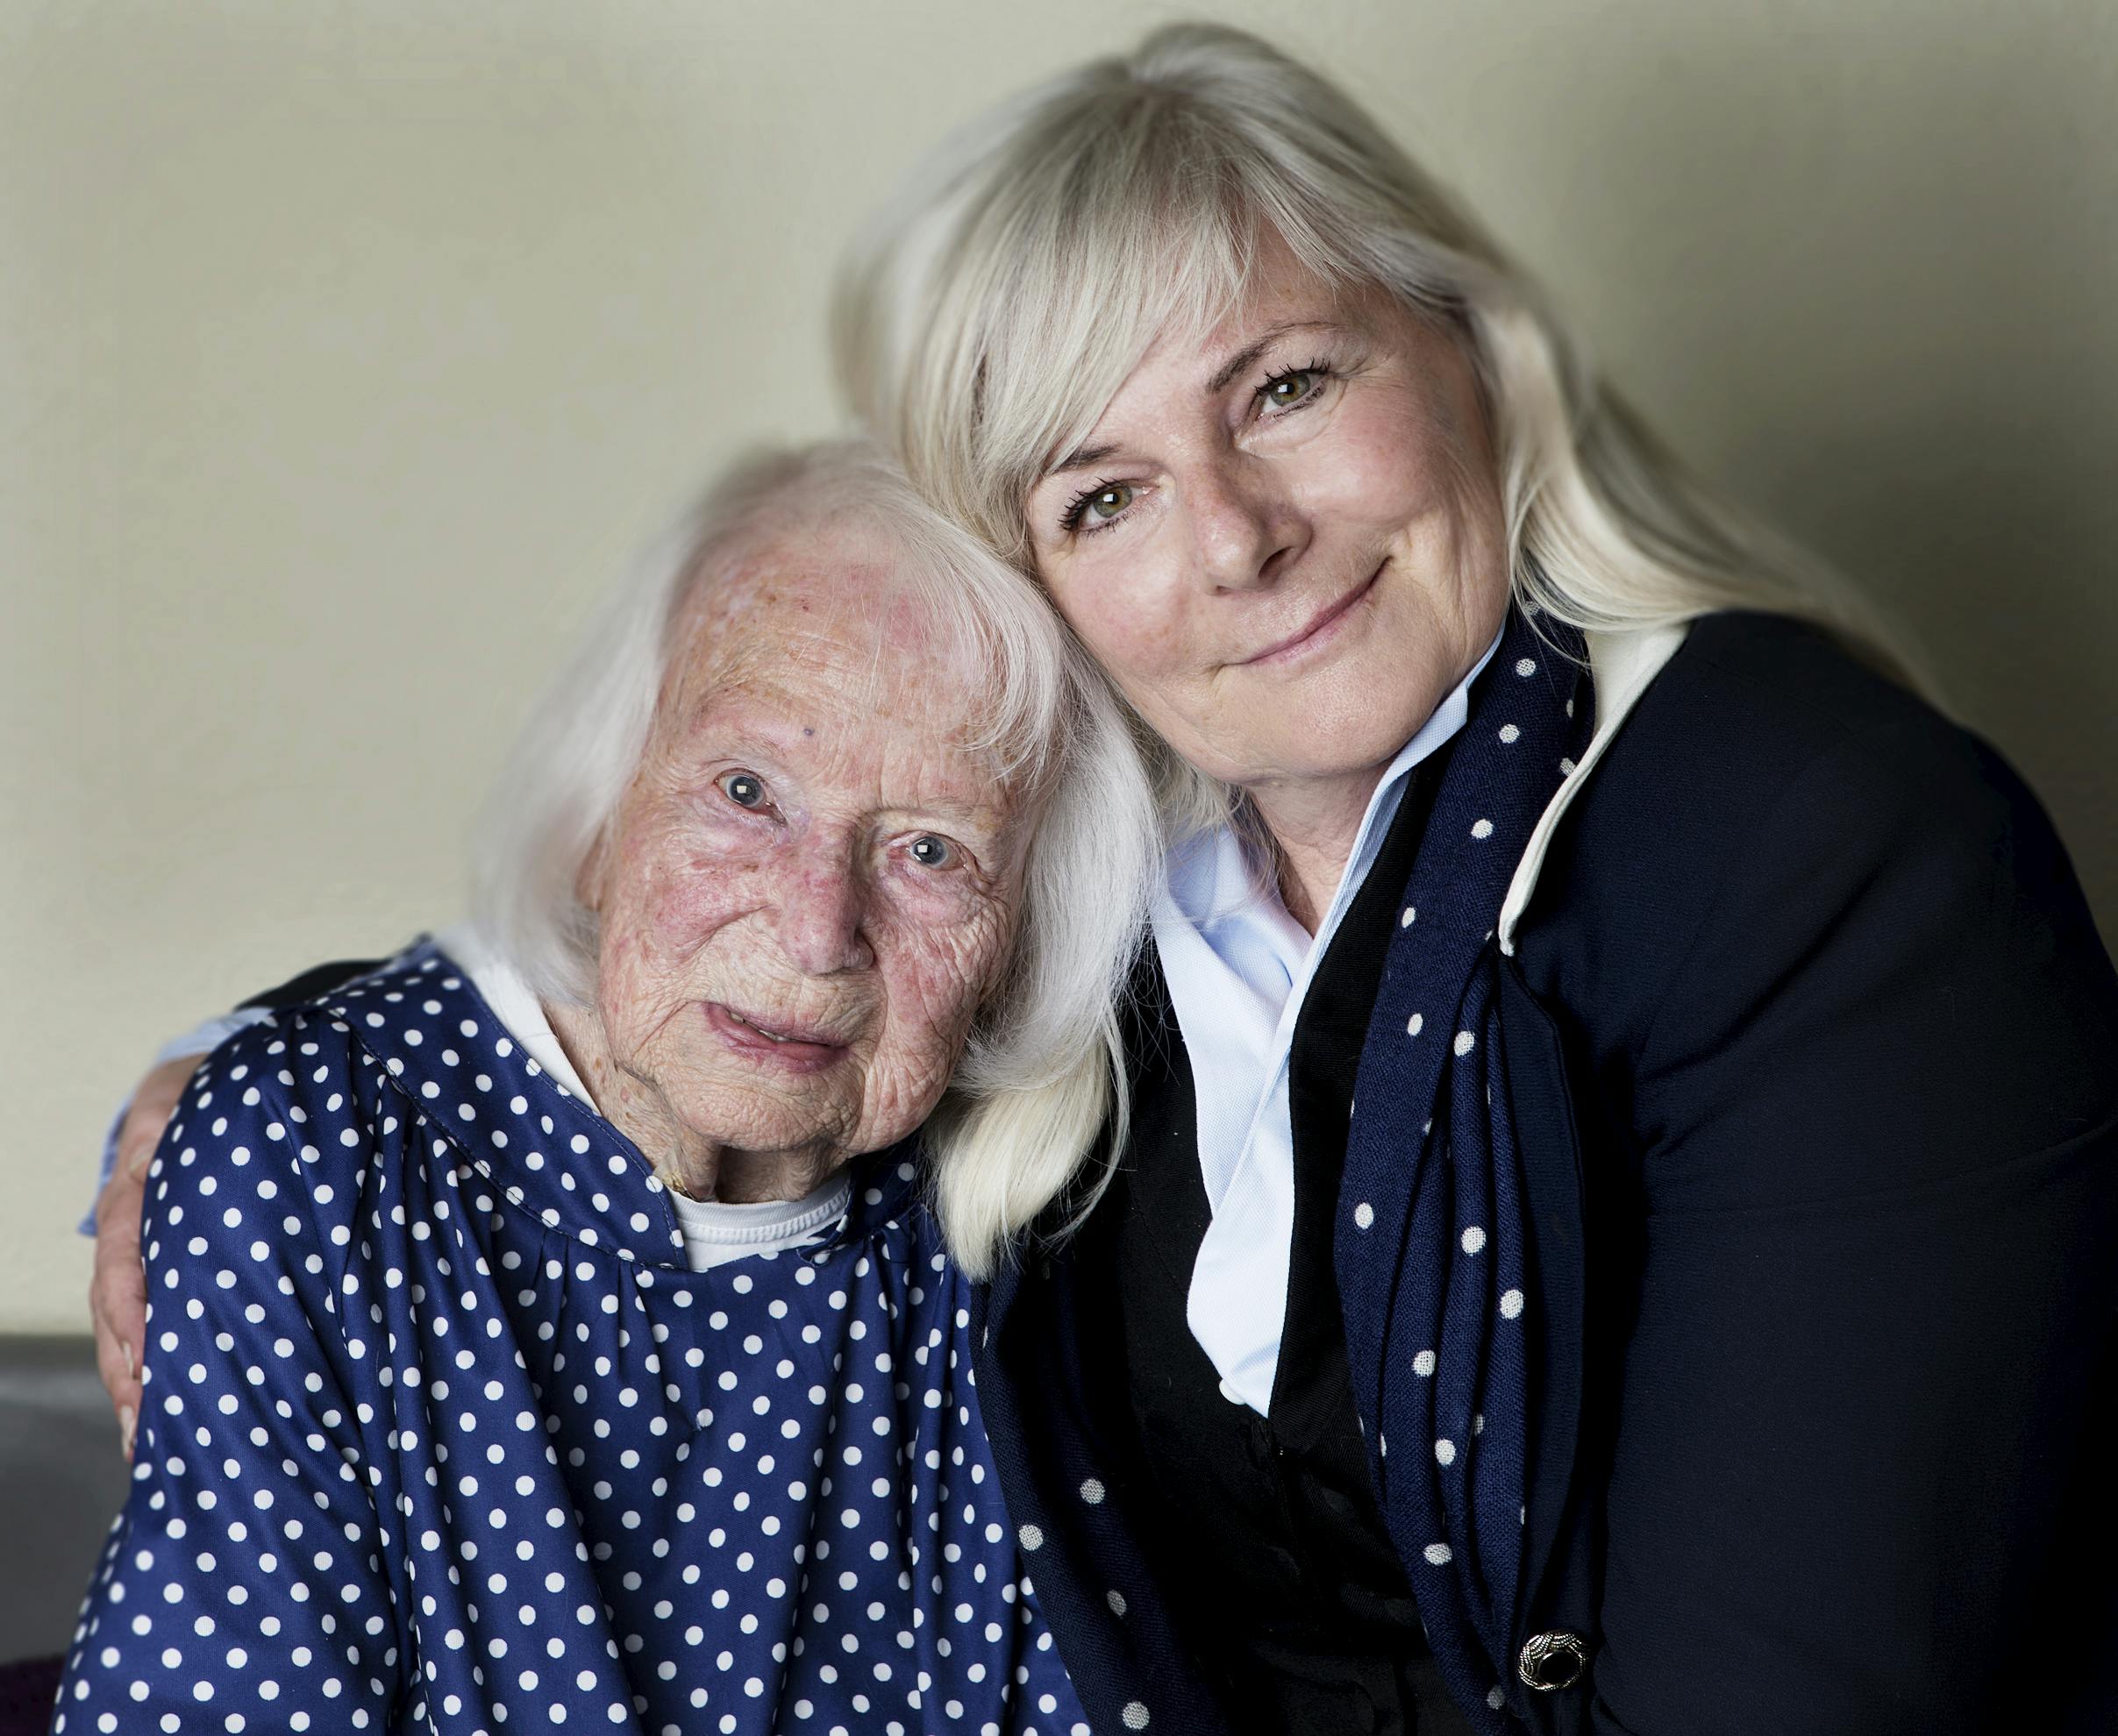 Nini og Pia veninder med stor aldersforskel - venskab uden alder